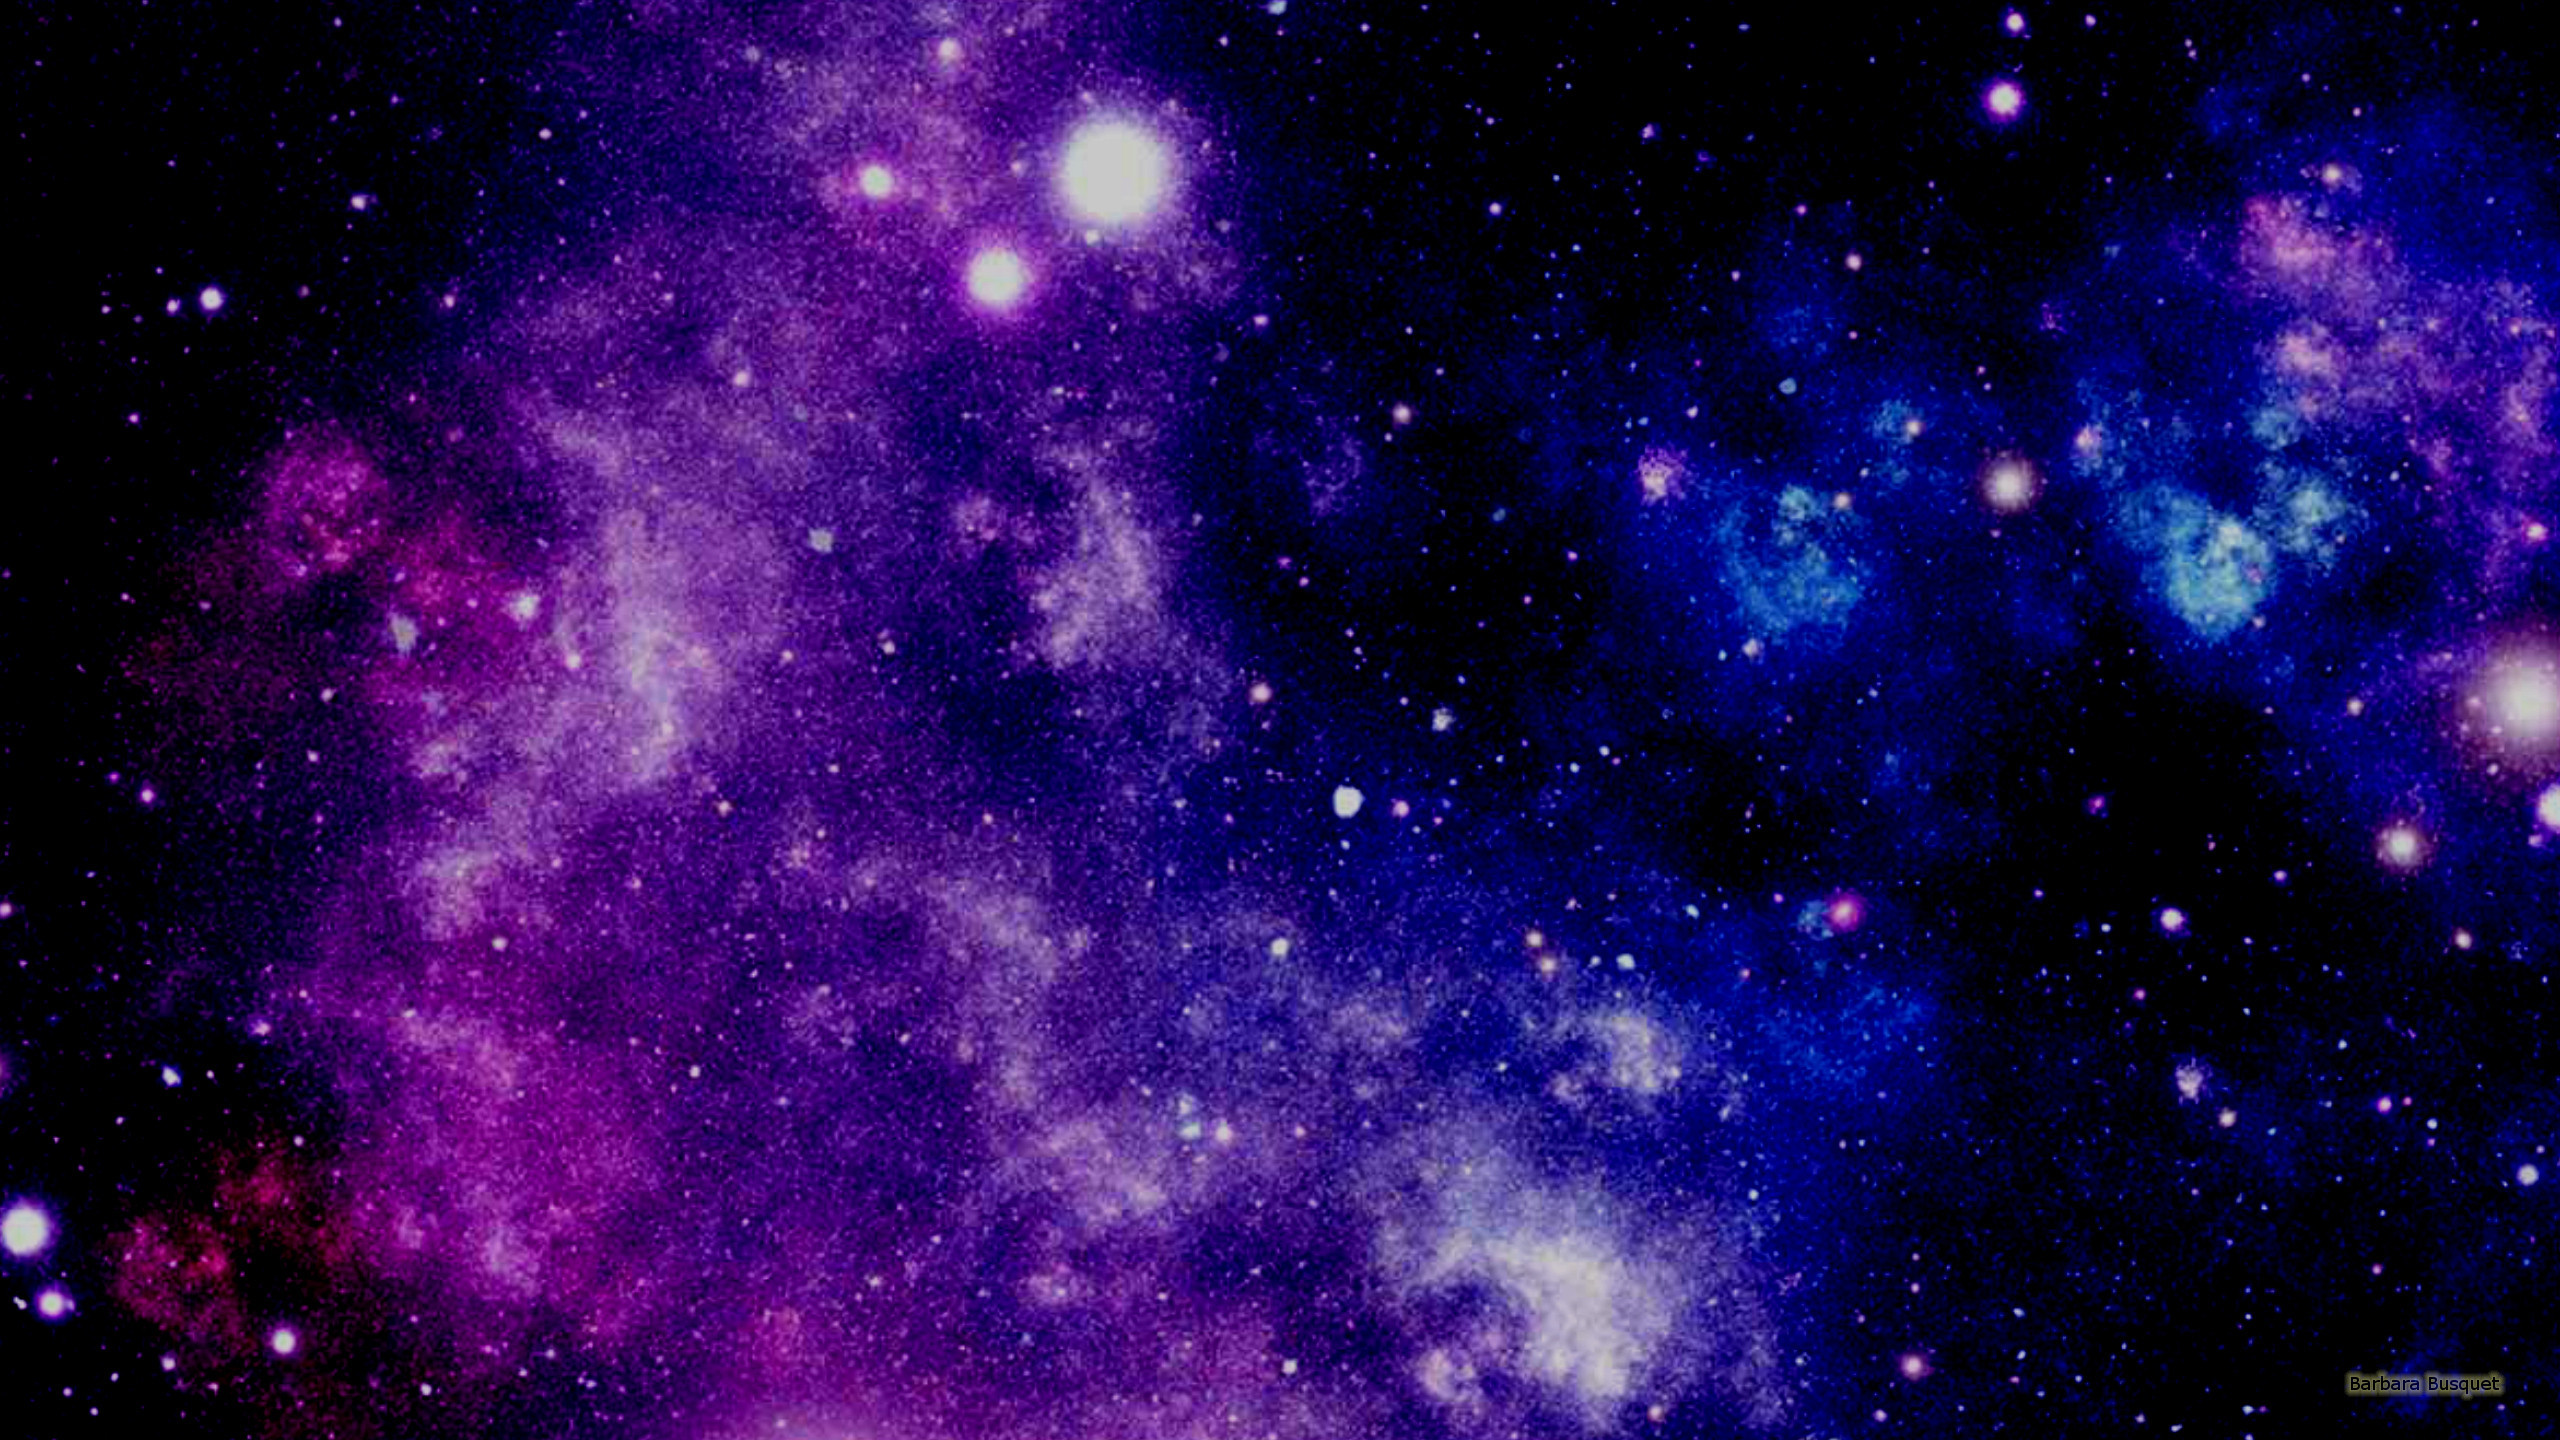 2560x1440 Dark galaxy. Dark galaxy wallpaper with stars and purple blue ...